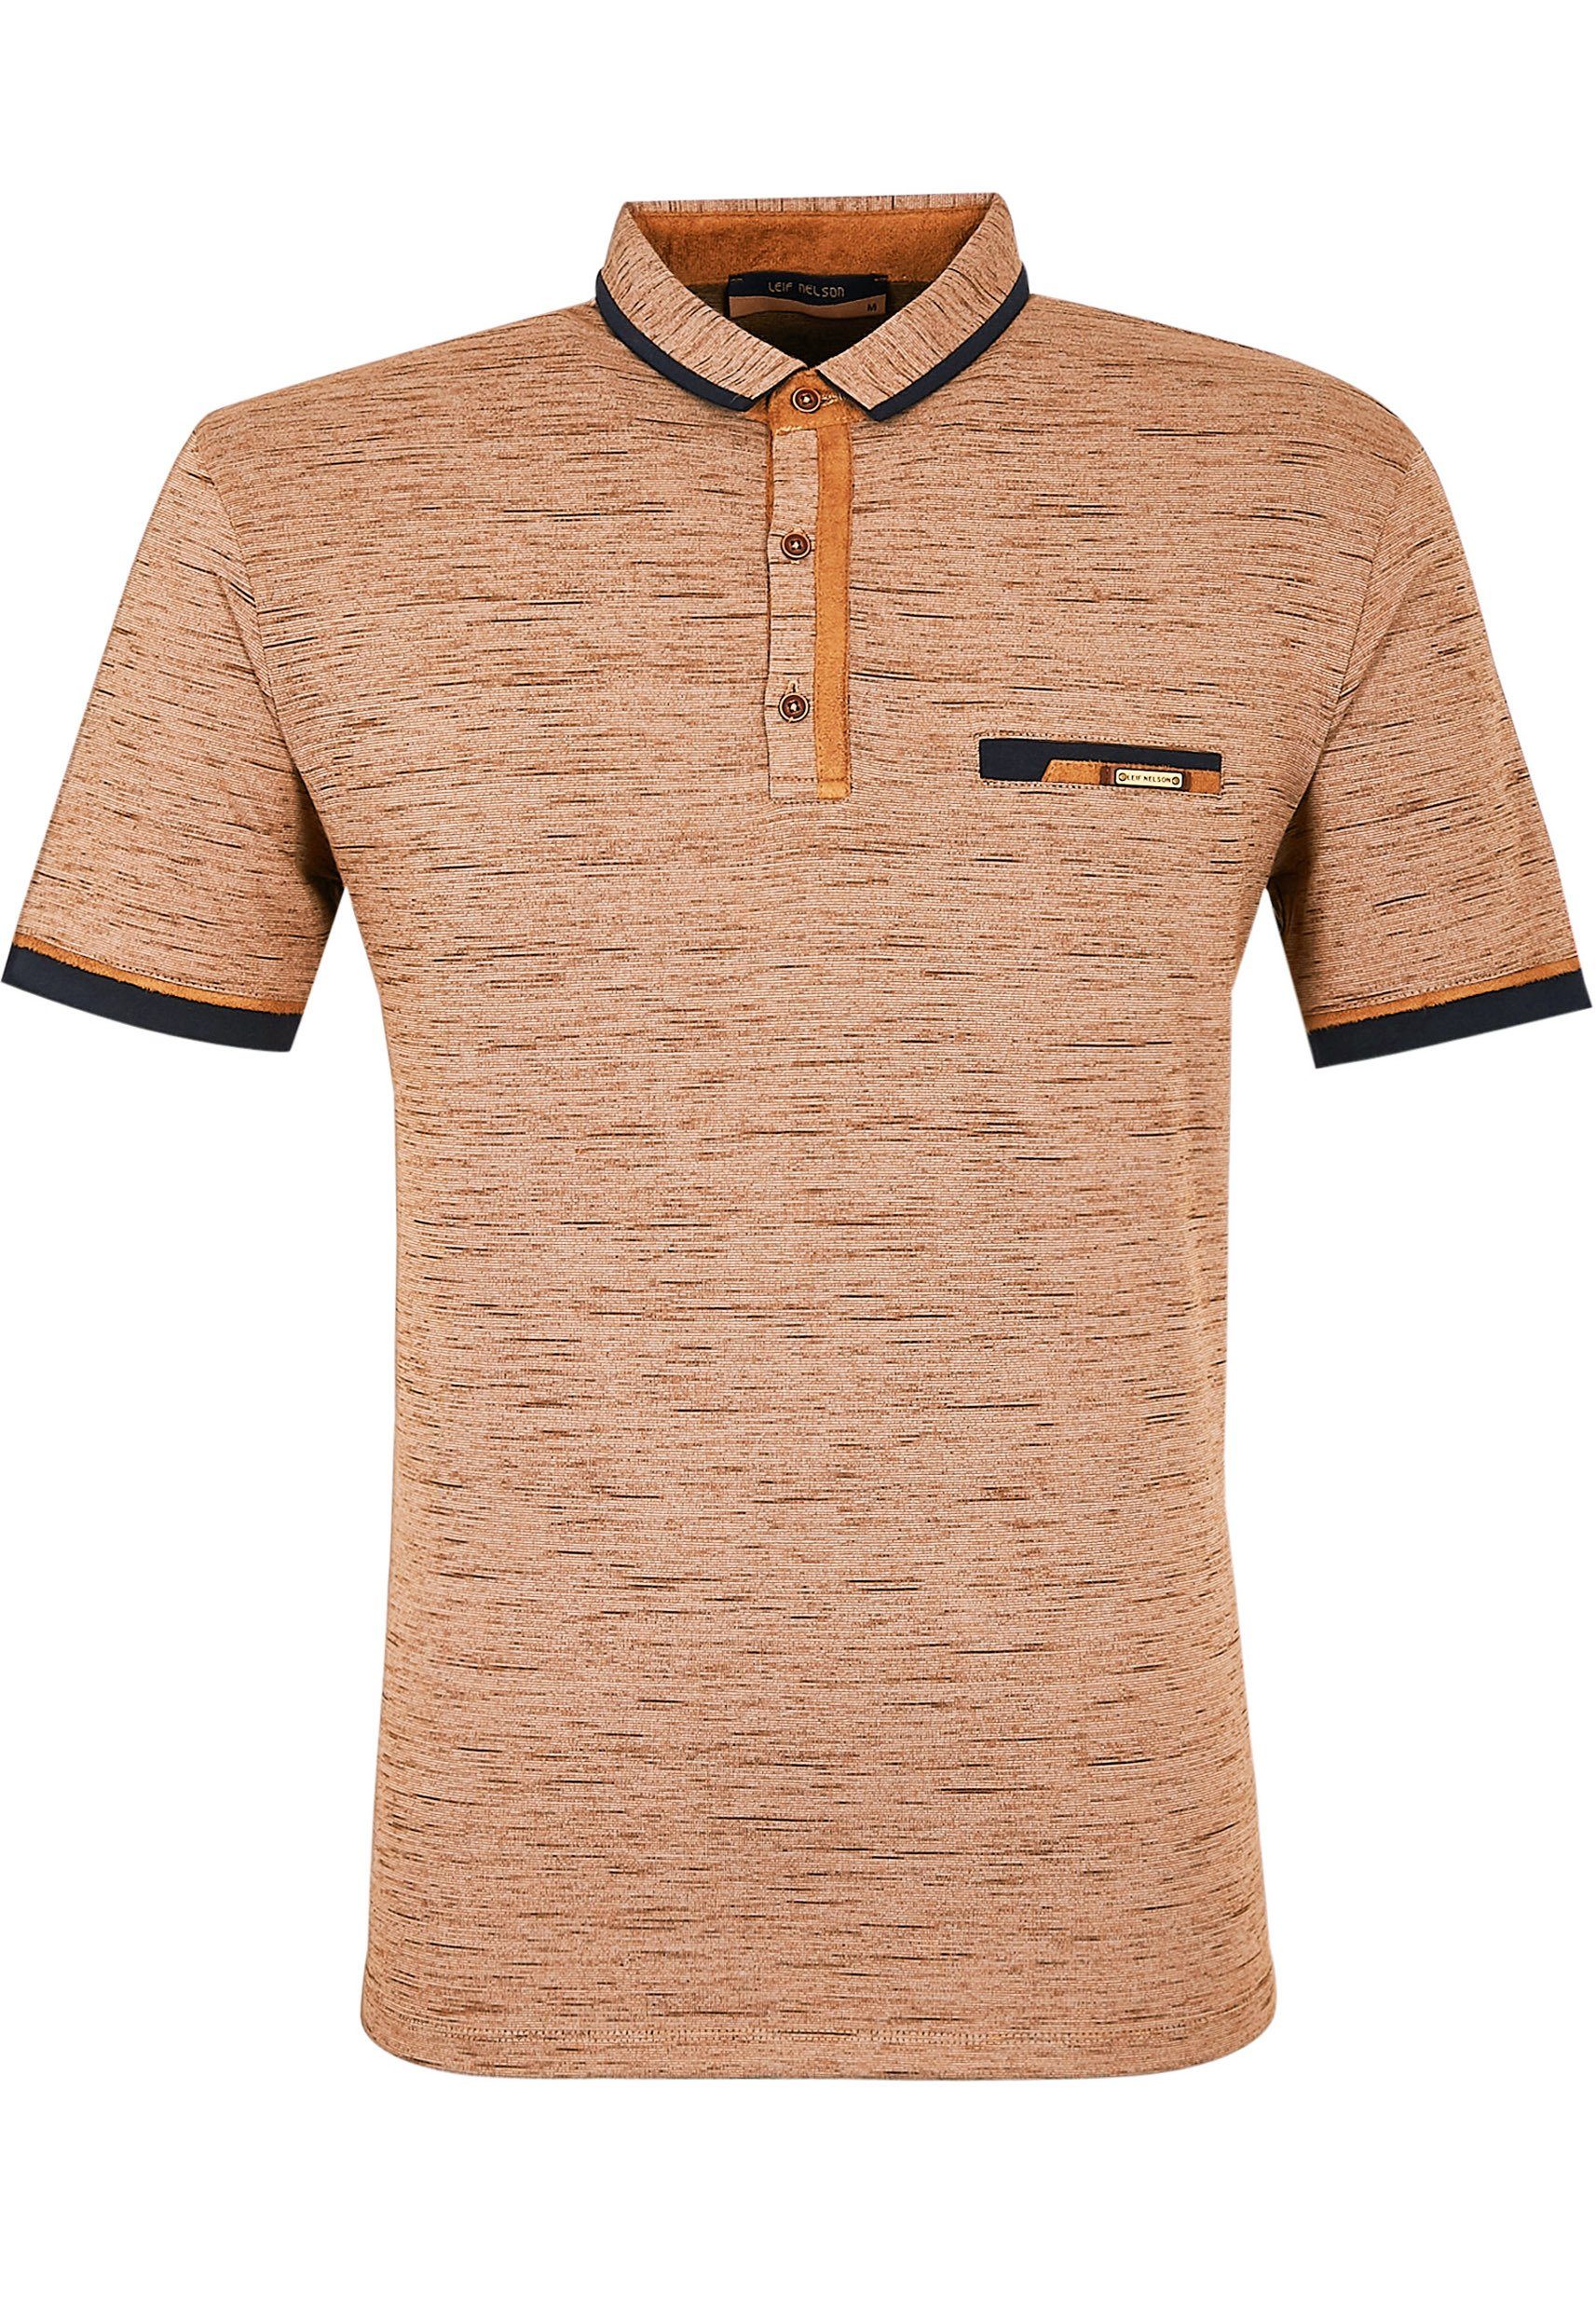 Nelson T-Shirt Polo Leif Herren camel-melange LN-55550 Poloshirt